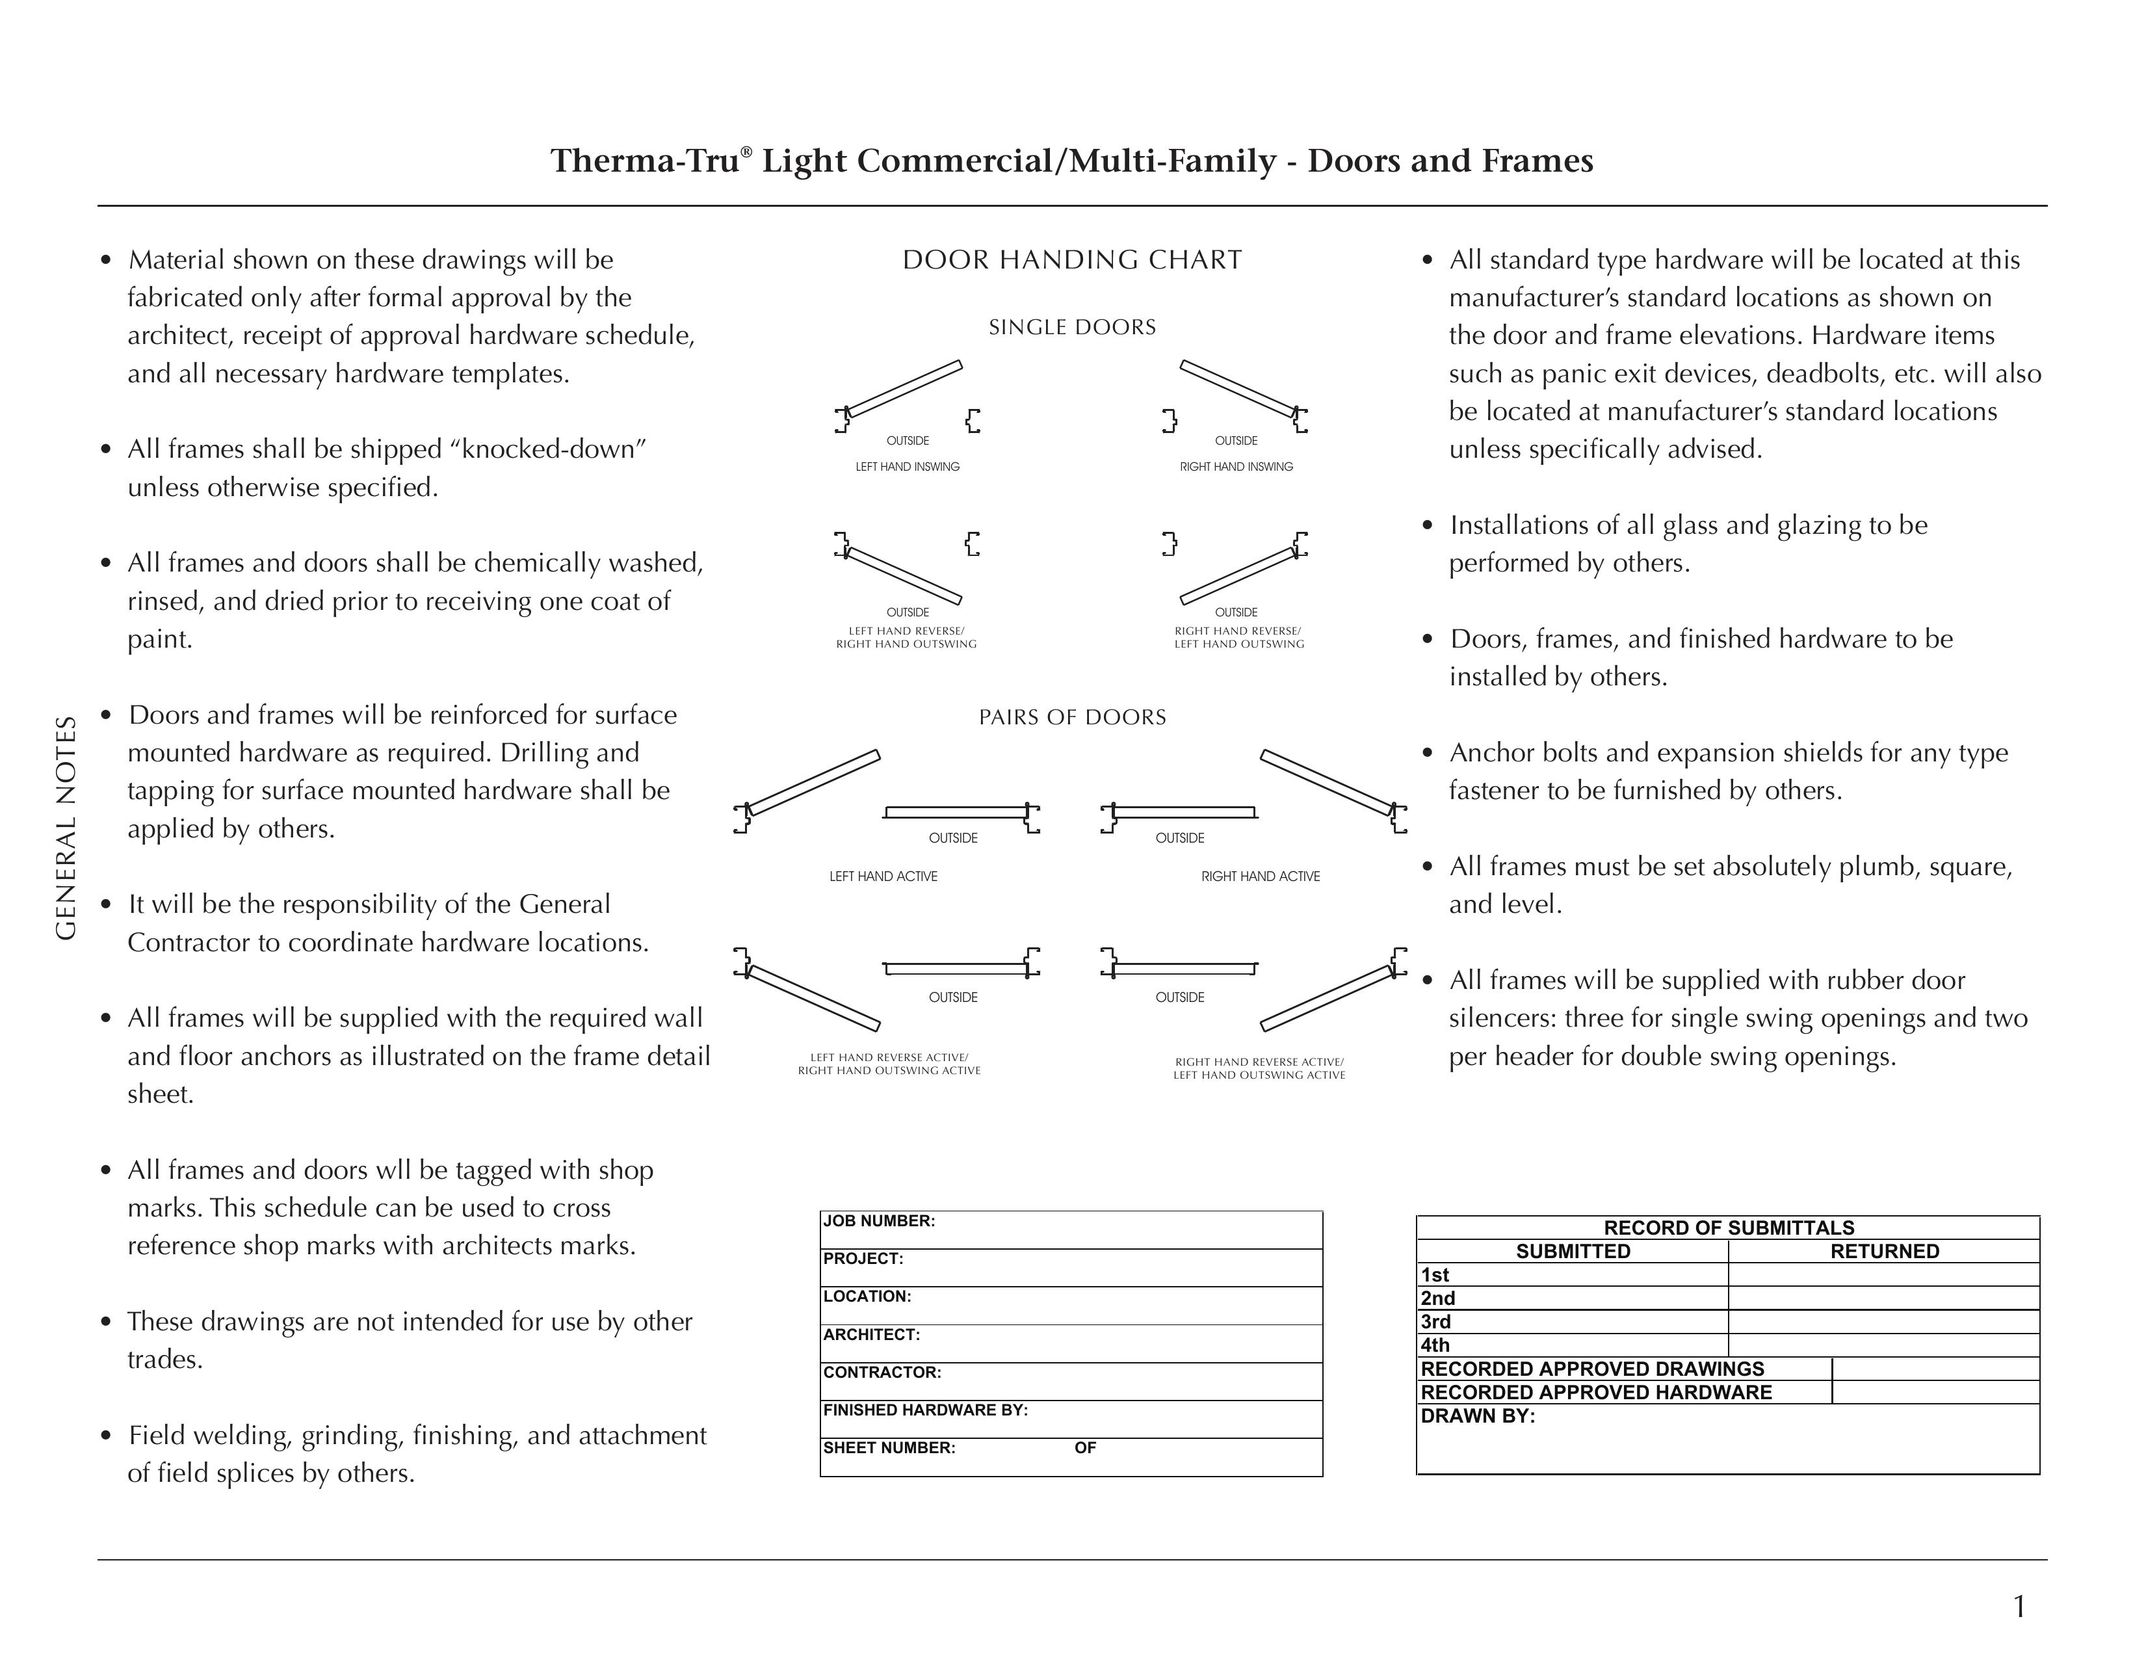 Therma-Tru Light Commercial Doors and Frames Door User Manual